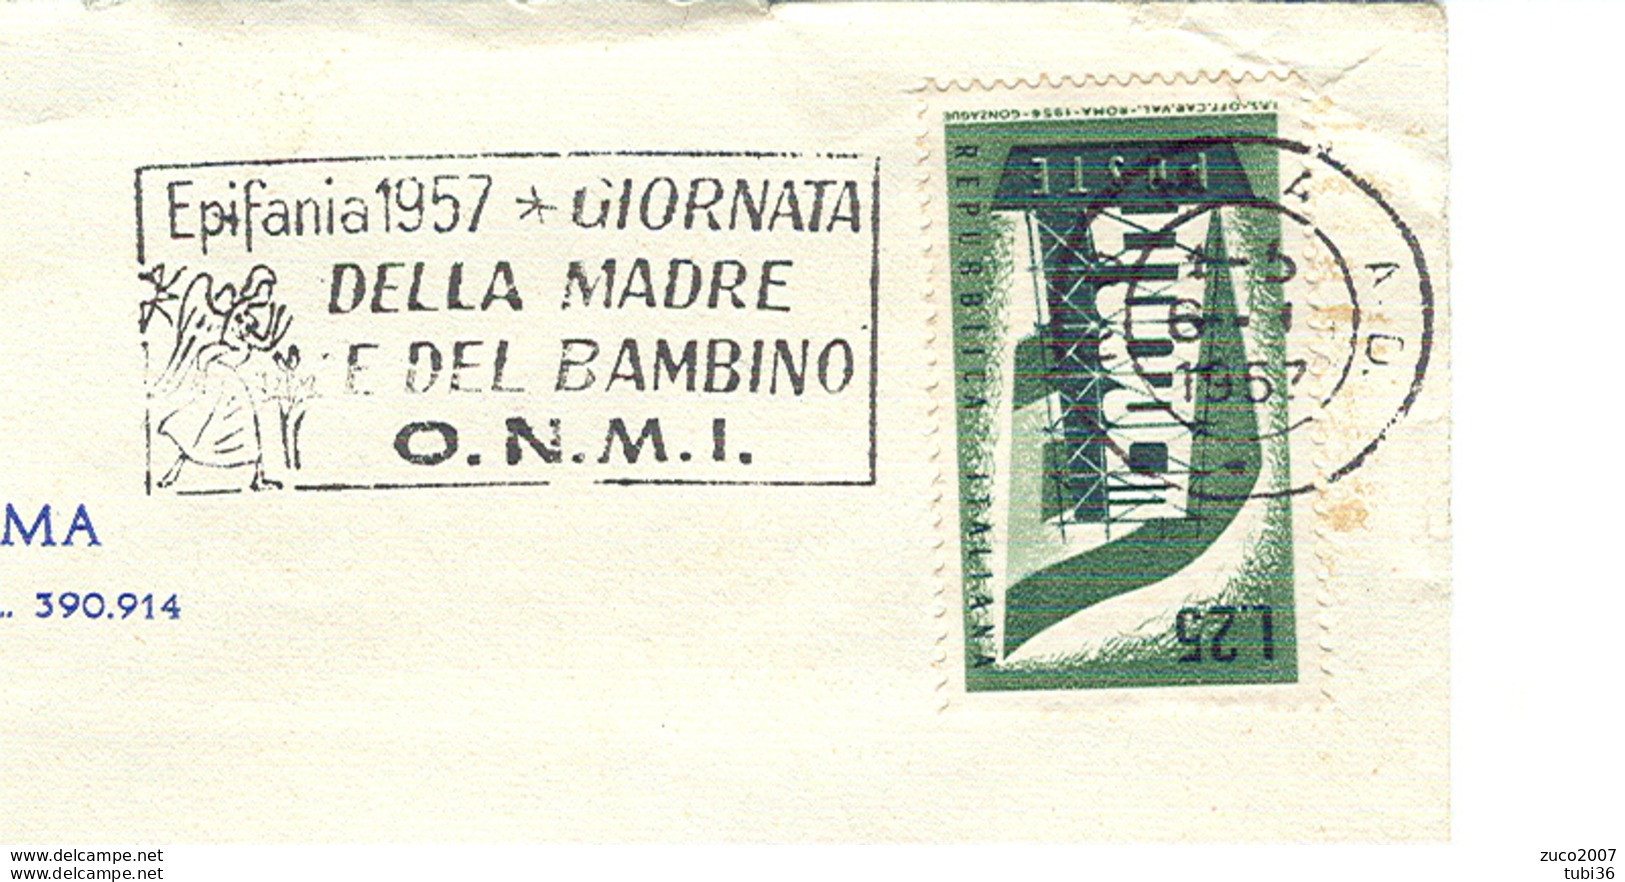 EPIFANIA 1957, GIORNATA DELLA MADRE E DEL BAMBINO- O.N.M.I.- TIMBRO POSTE ROMA TARGHETTA,1957,CIRCOLO CANOTTIERI,ROMA, - Mother's Day